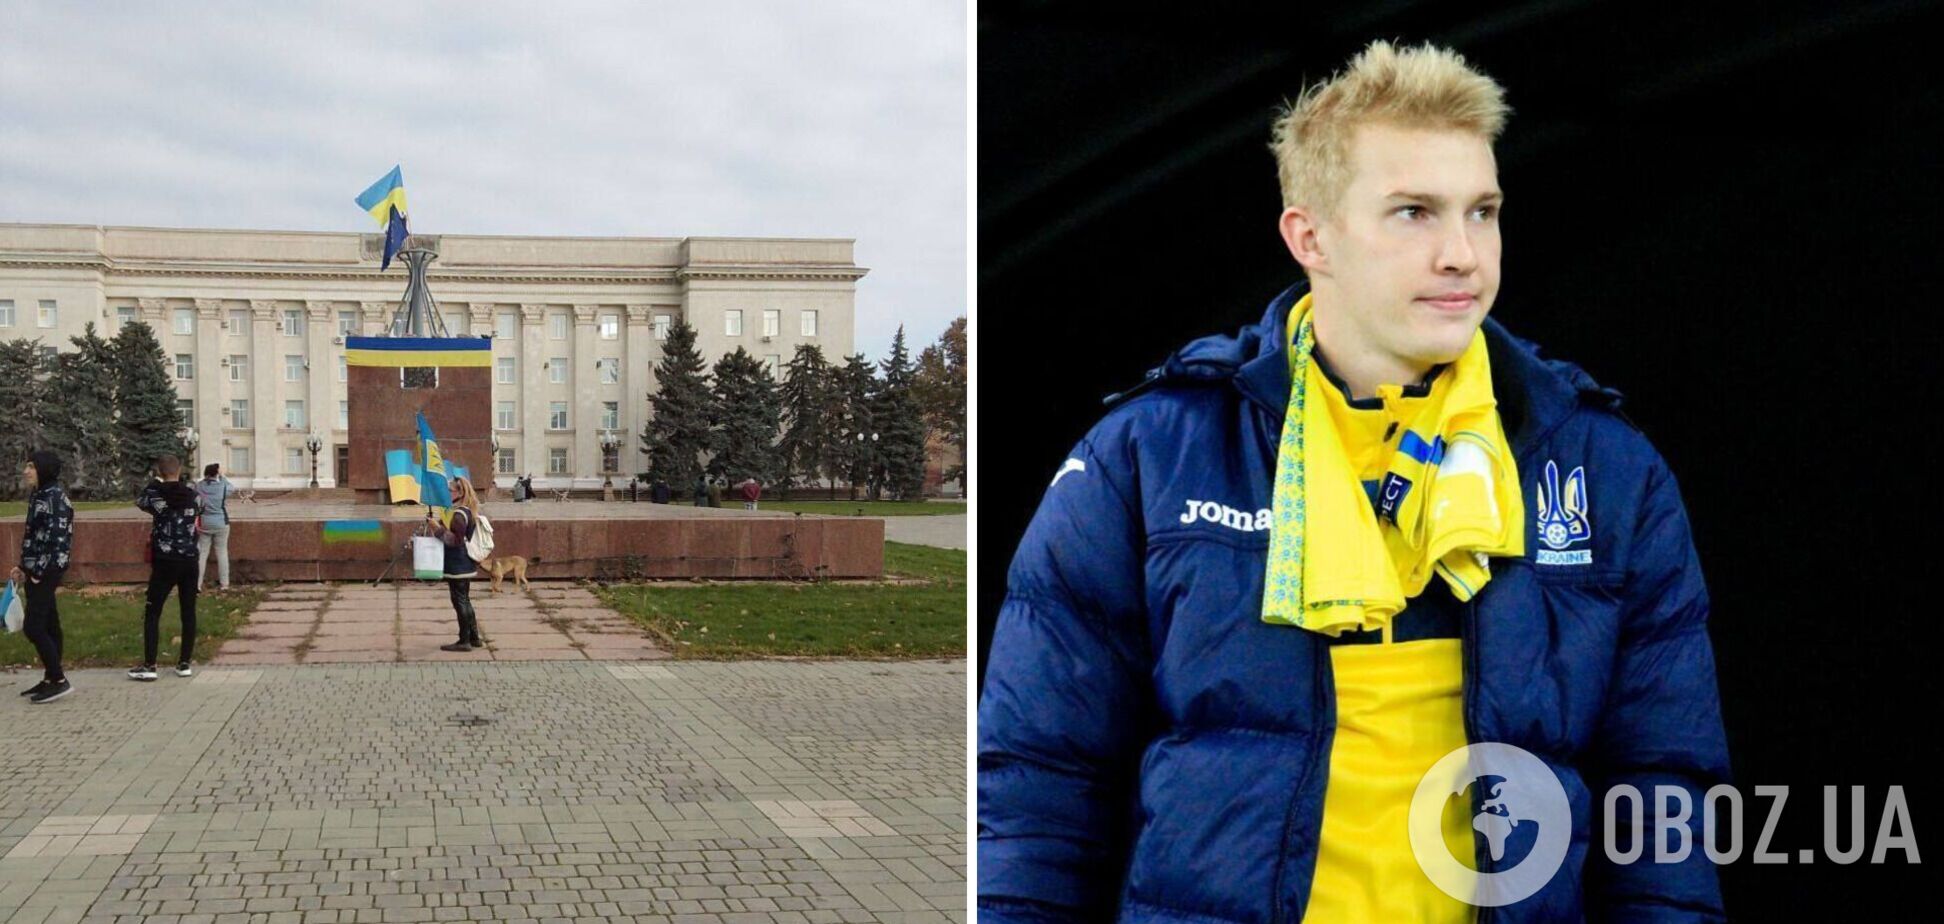 'Все на своем месте!' Футболист сборной Украины эмоционально отреагировал на украинские флаги в Херсоне